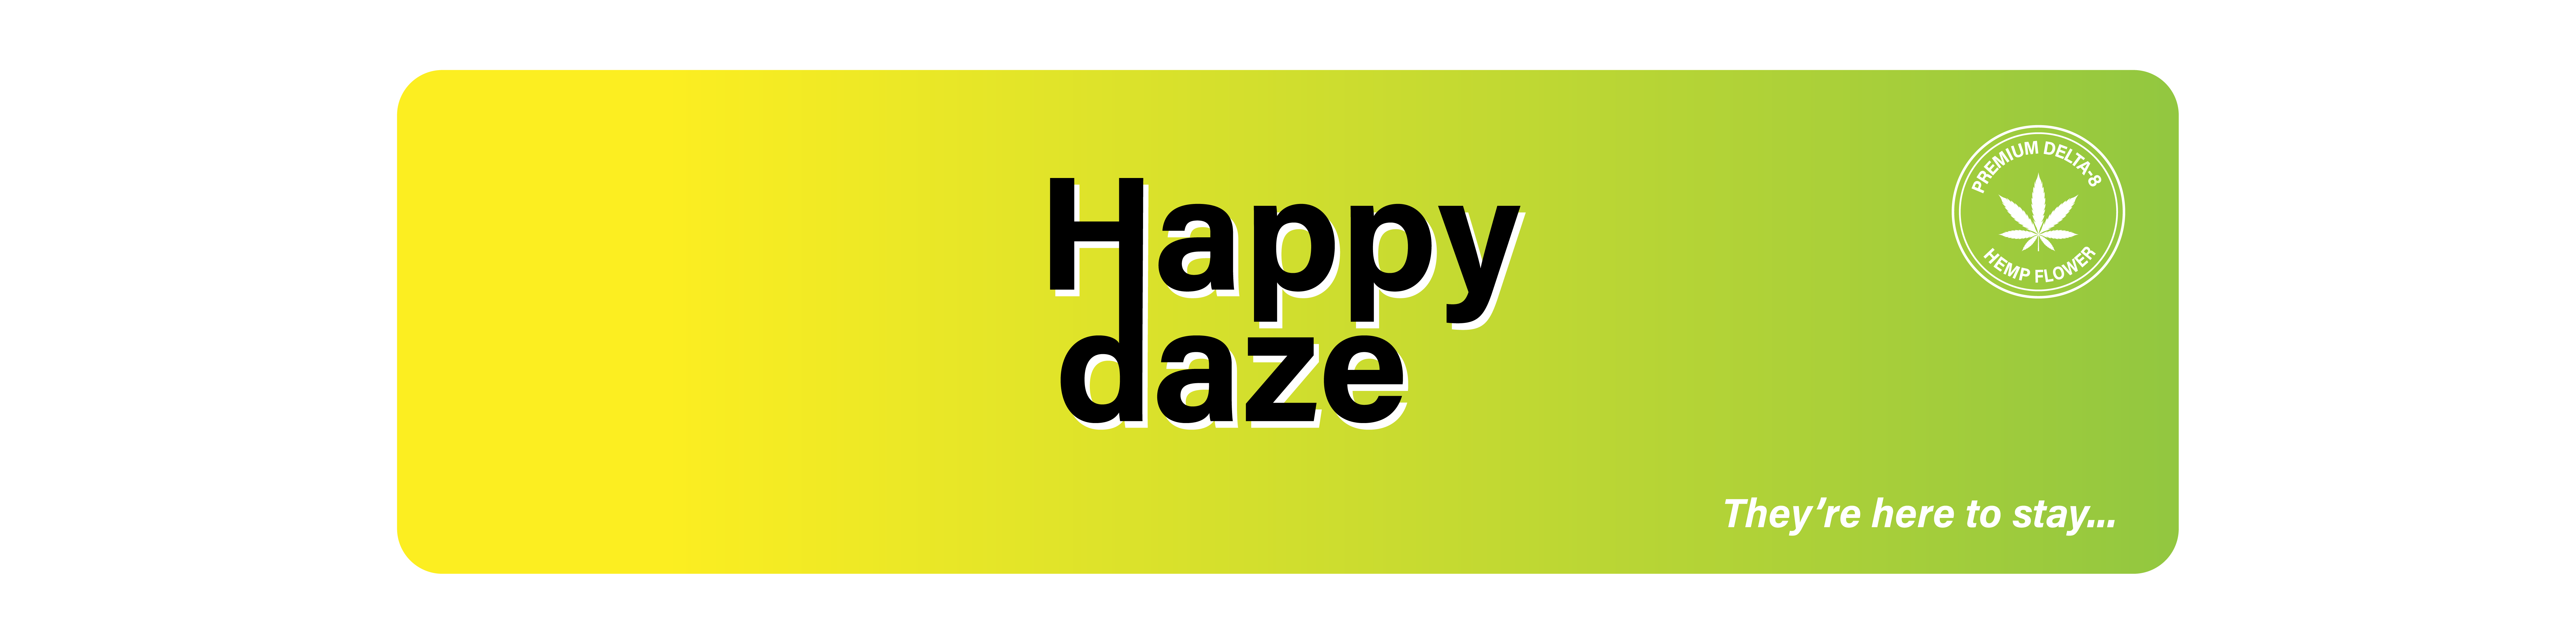 Happy Daze Banner 2000x500 sm 01 01